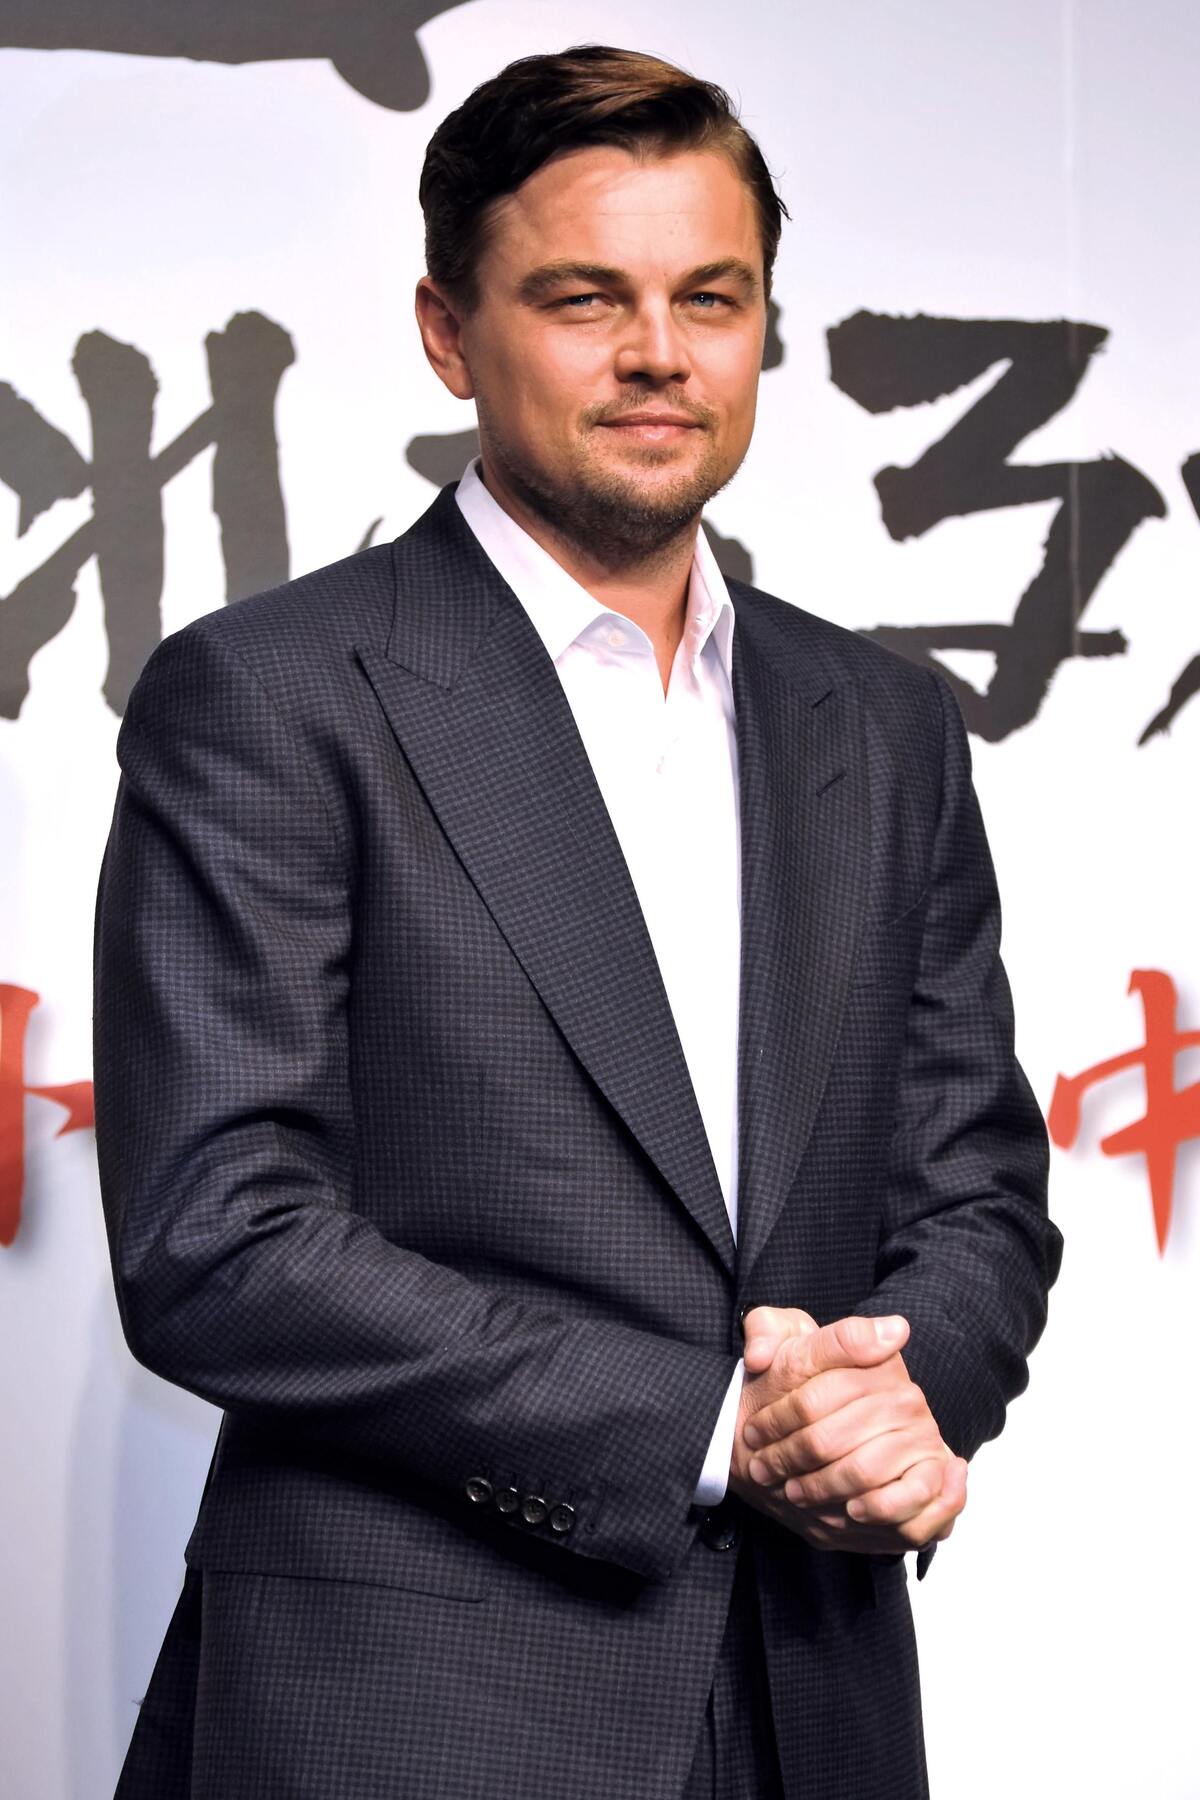 Леонардо Ди Каприо на пресс-конференции фильма "Джанго освобожденный" в Токио